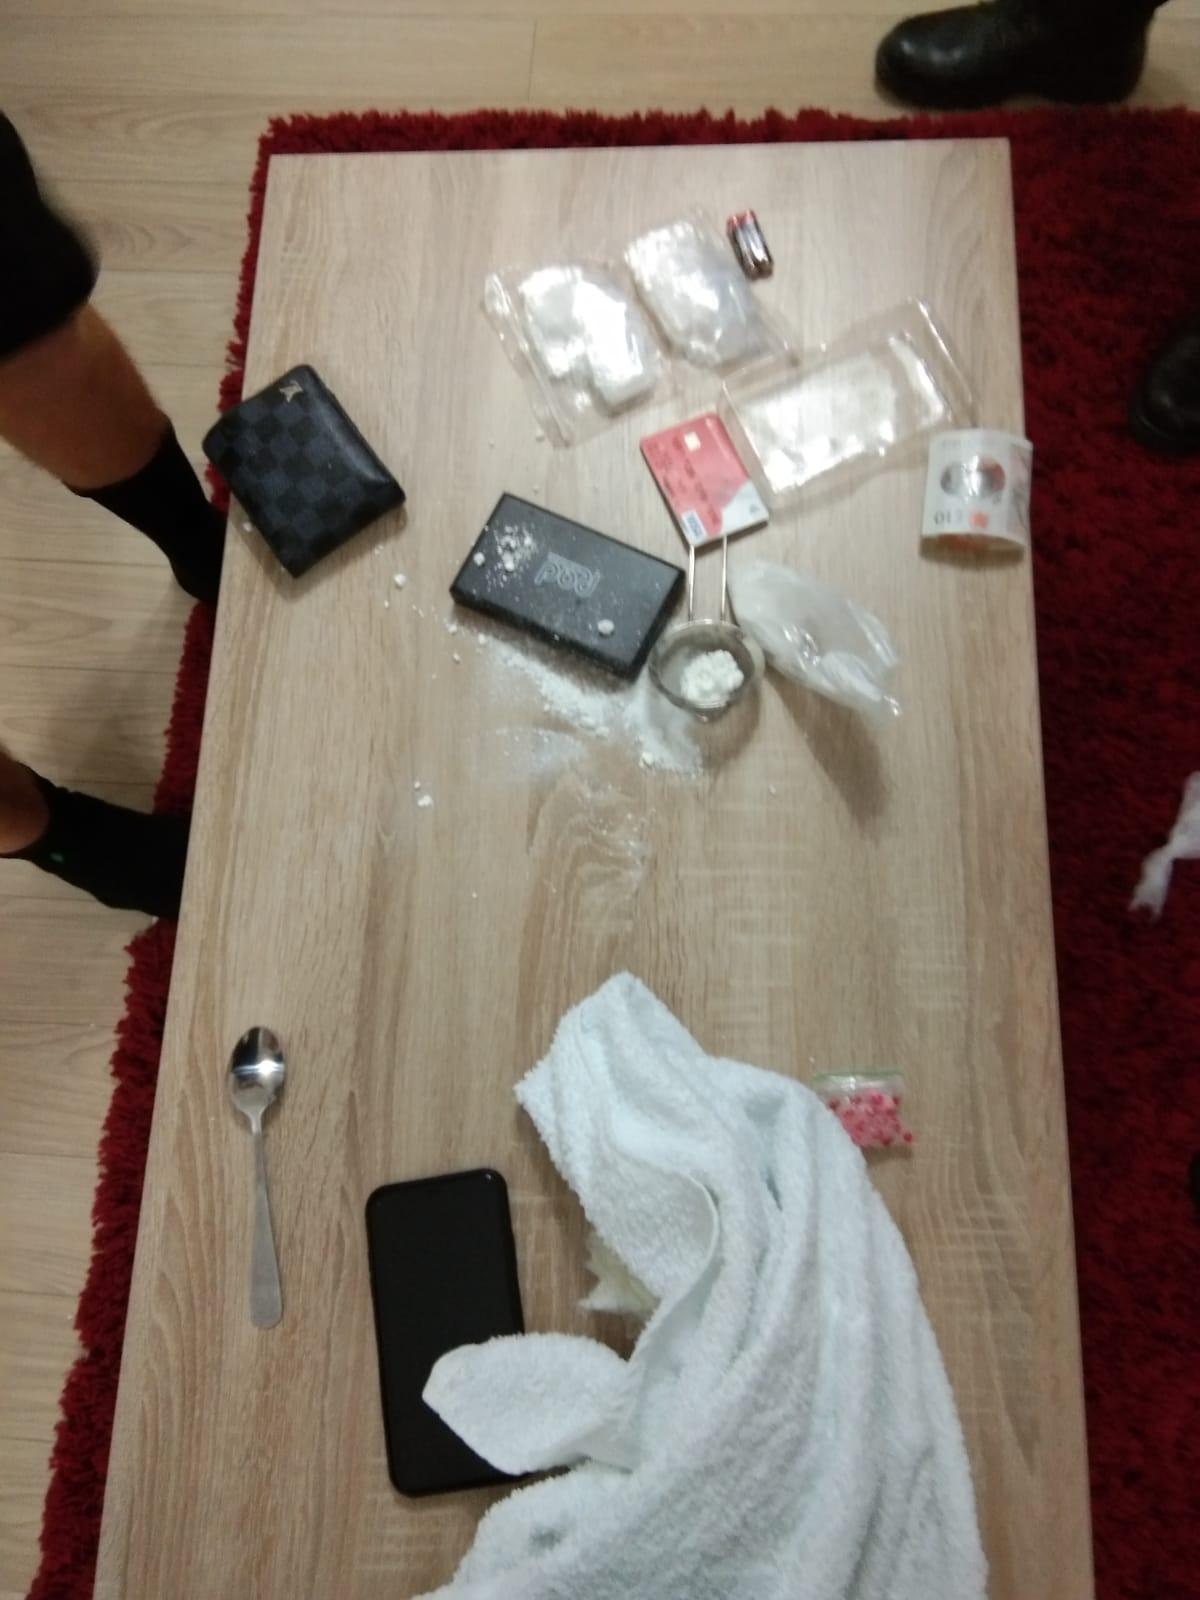 Chiriaş găsit cu droguri pe masă într-un apartament din Mamaia